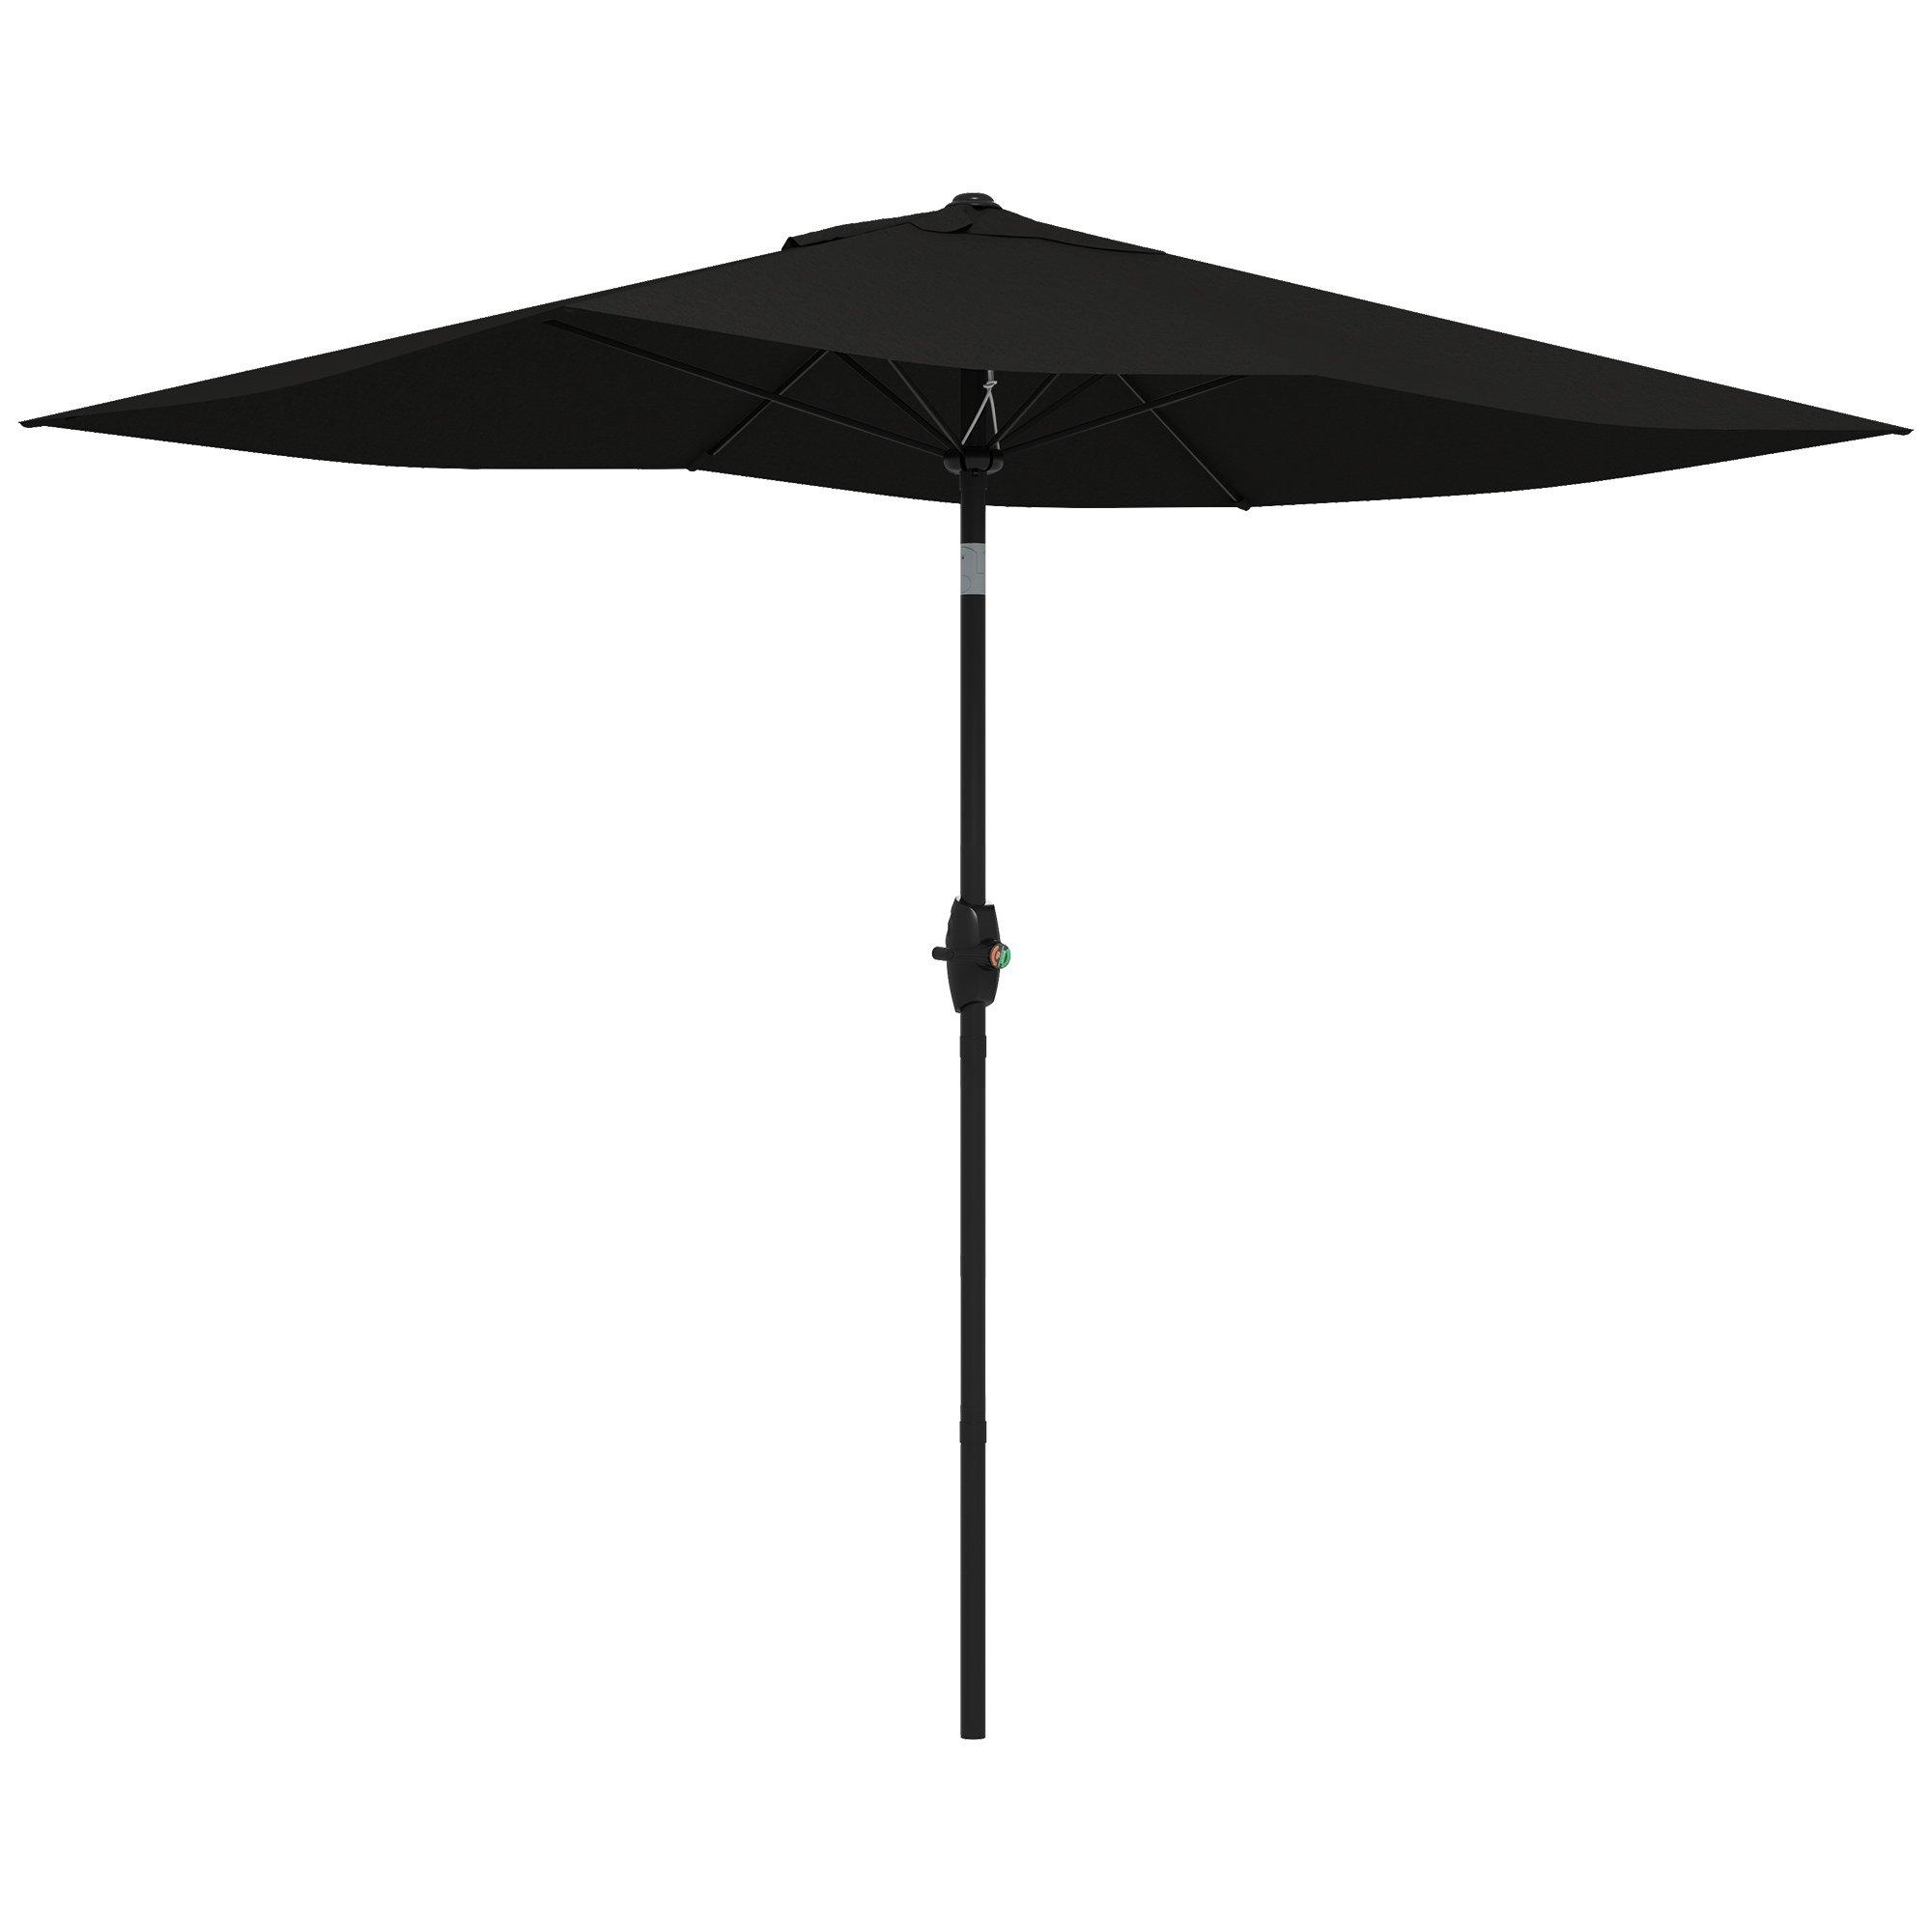 2 x 3(m) Rectangular Garden Parasol Patio Outdoor Table Umbrellas